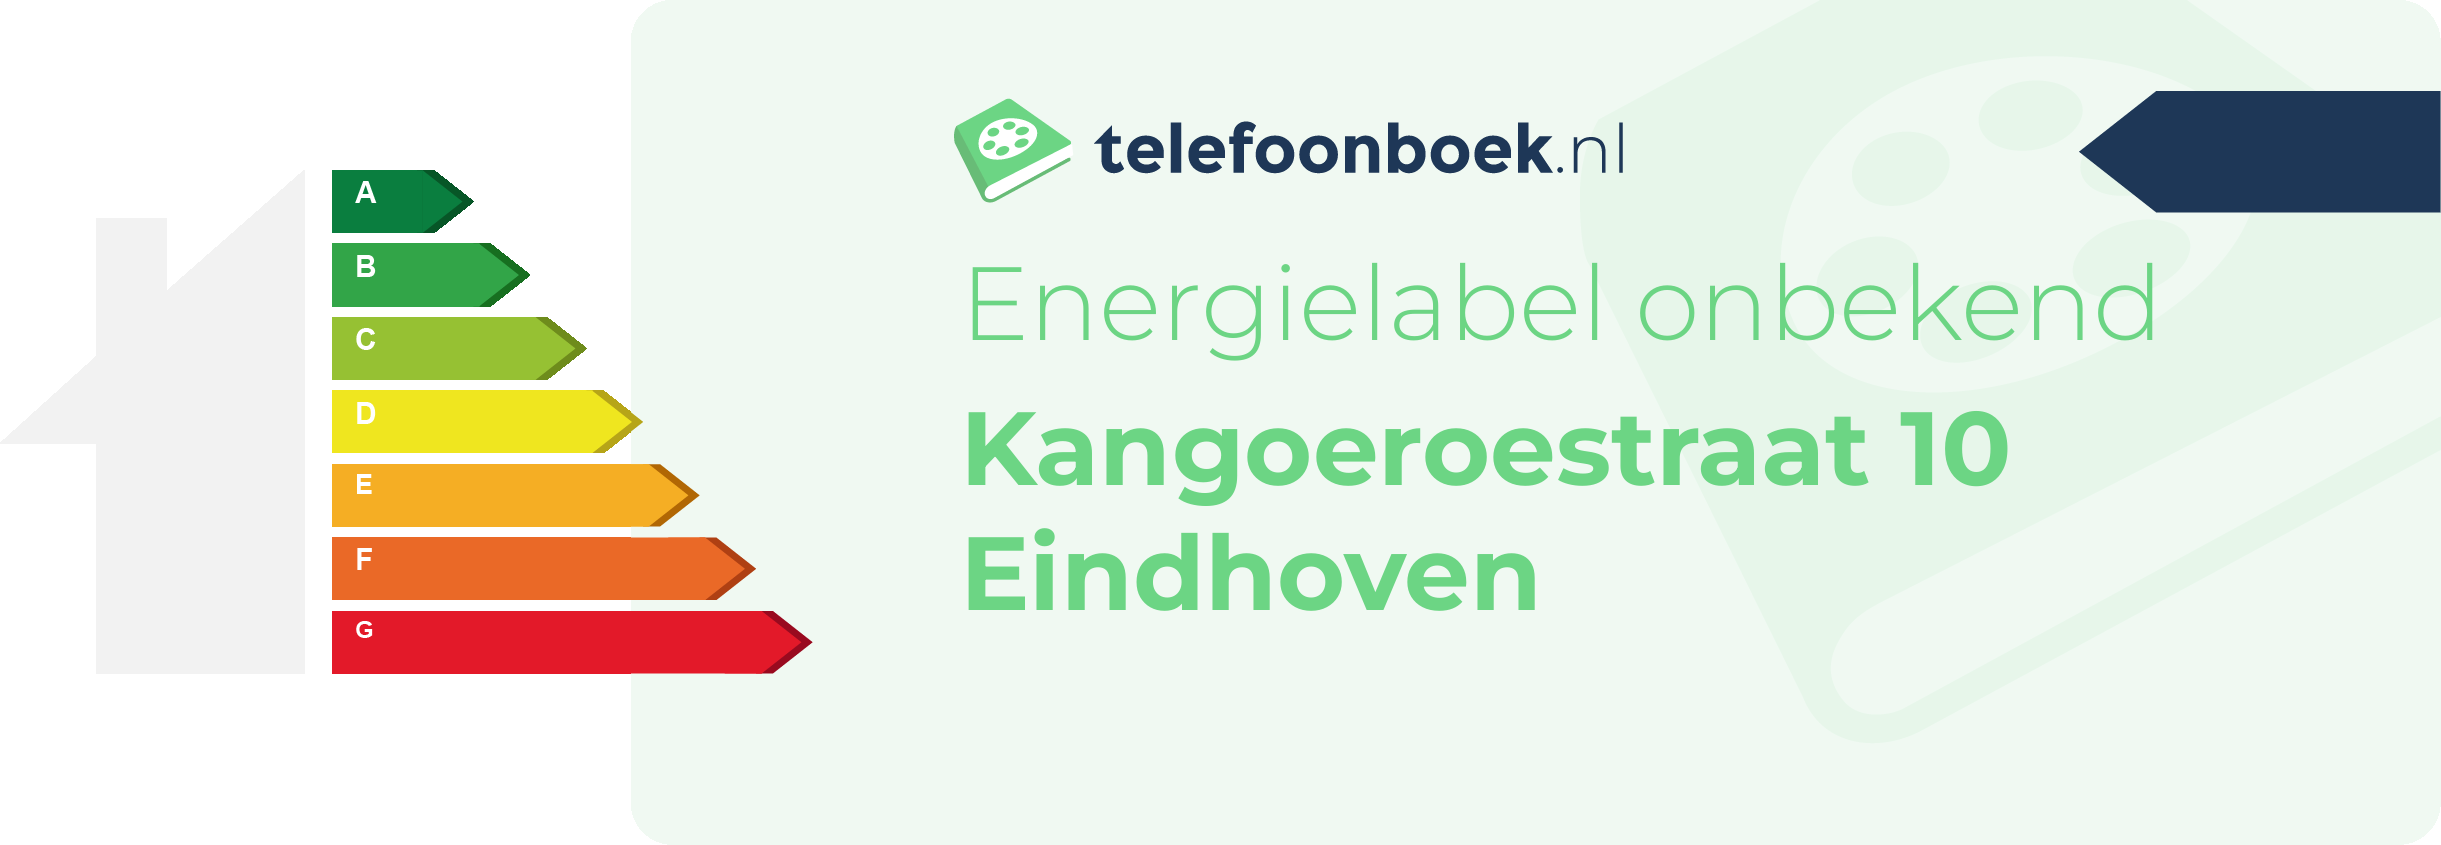 Energielabel Kangoeroestraat 10 Eindhoven